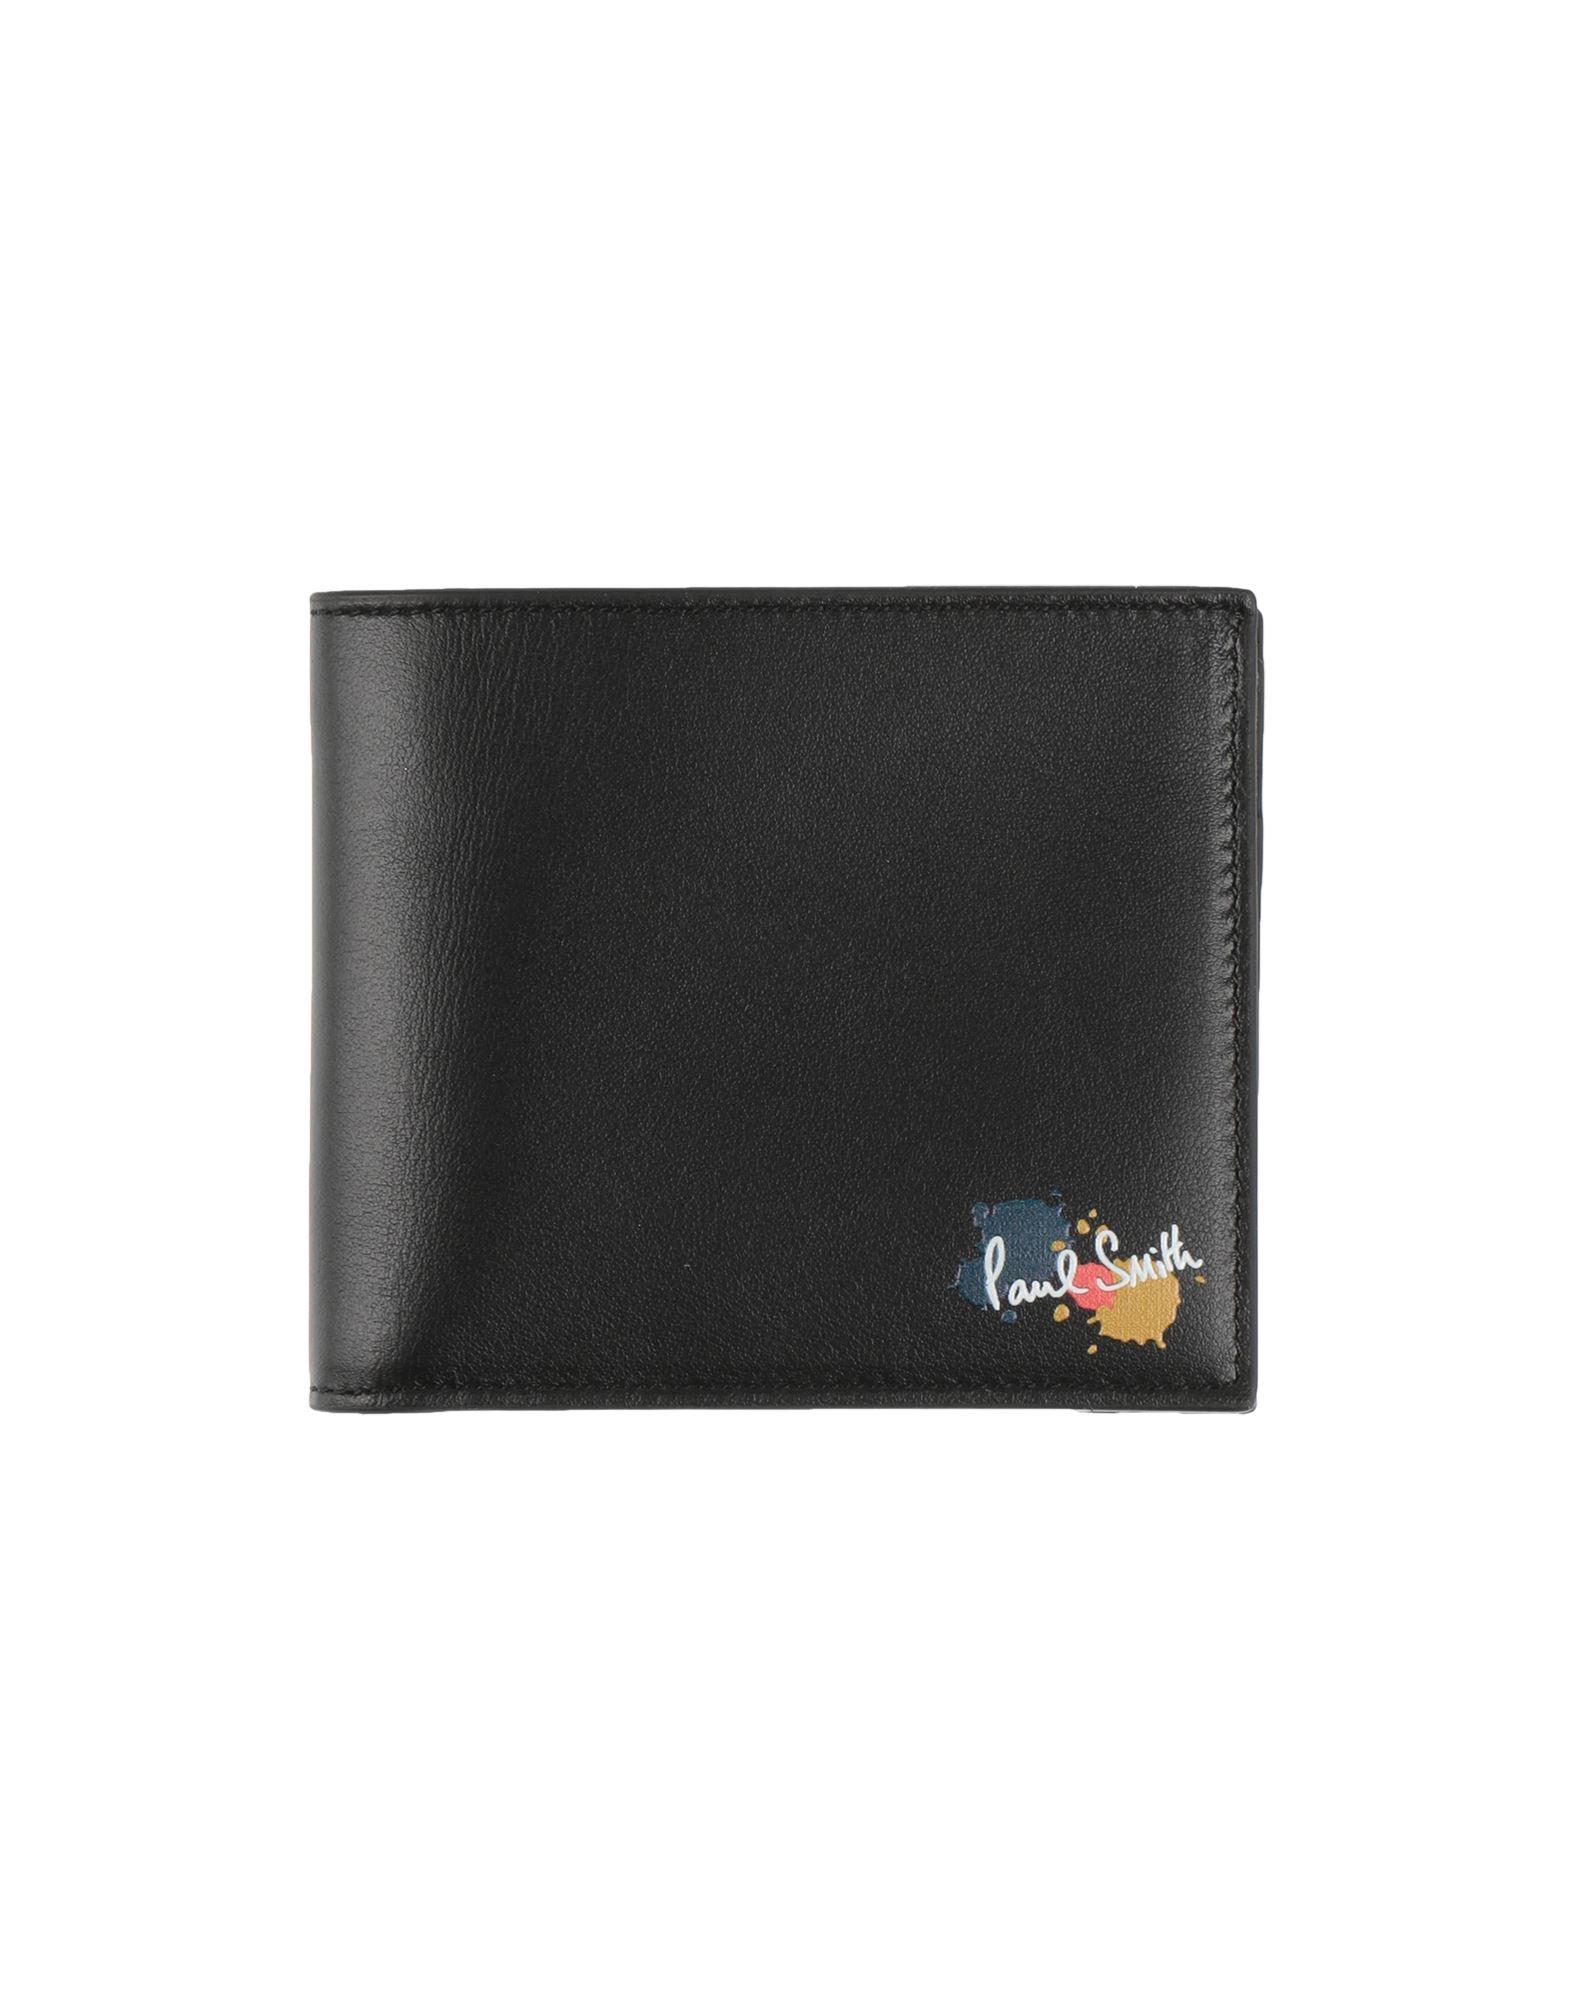 Paul Smith Wallet in Black for Men | Lyst